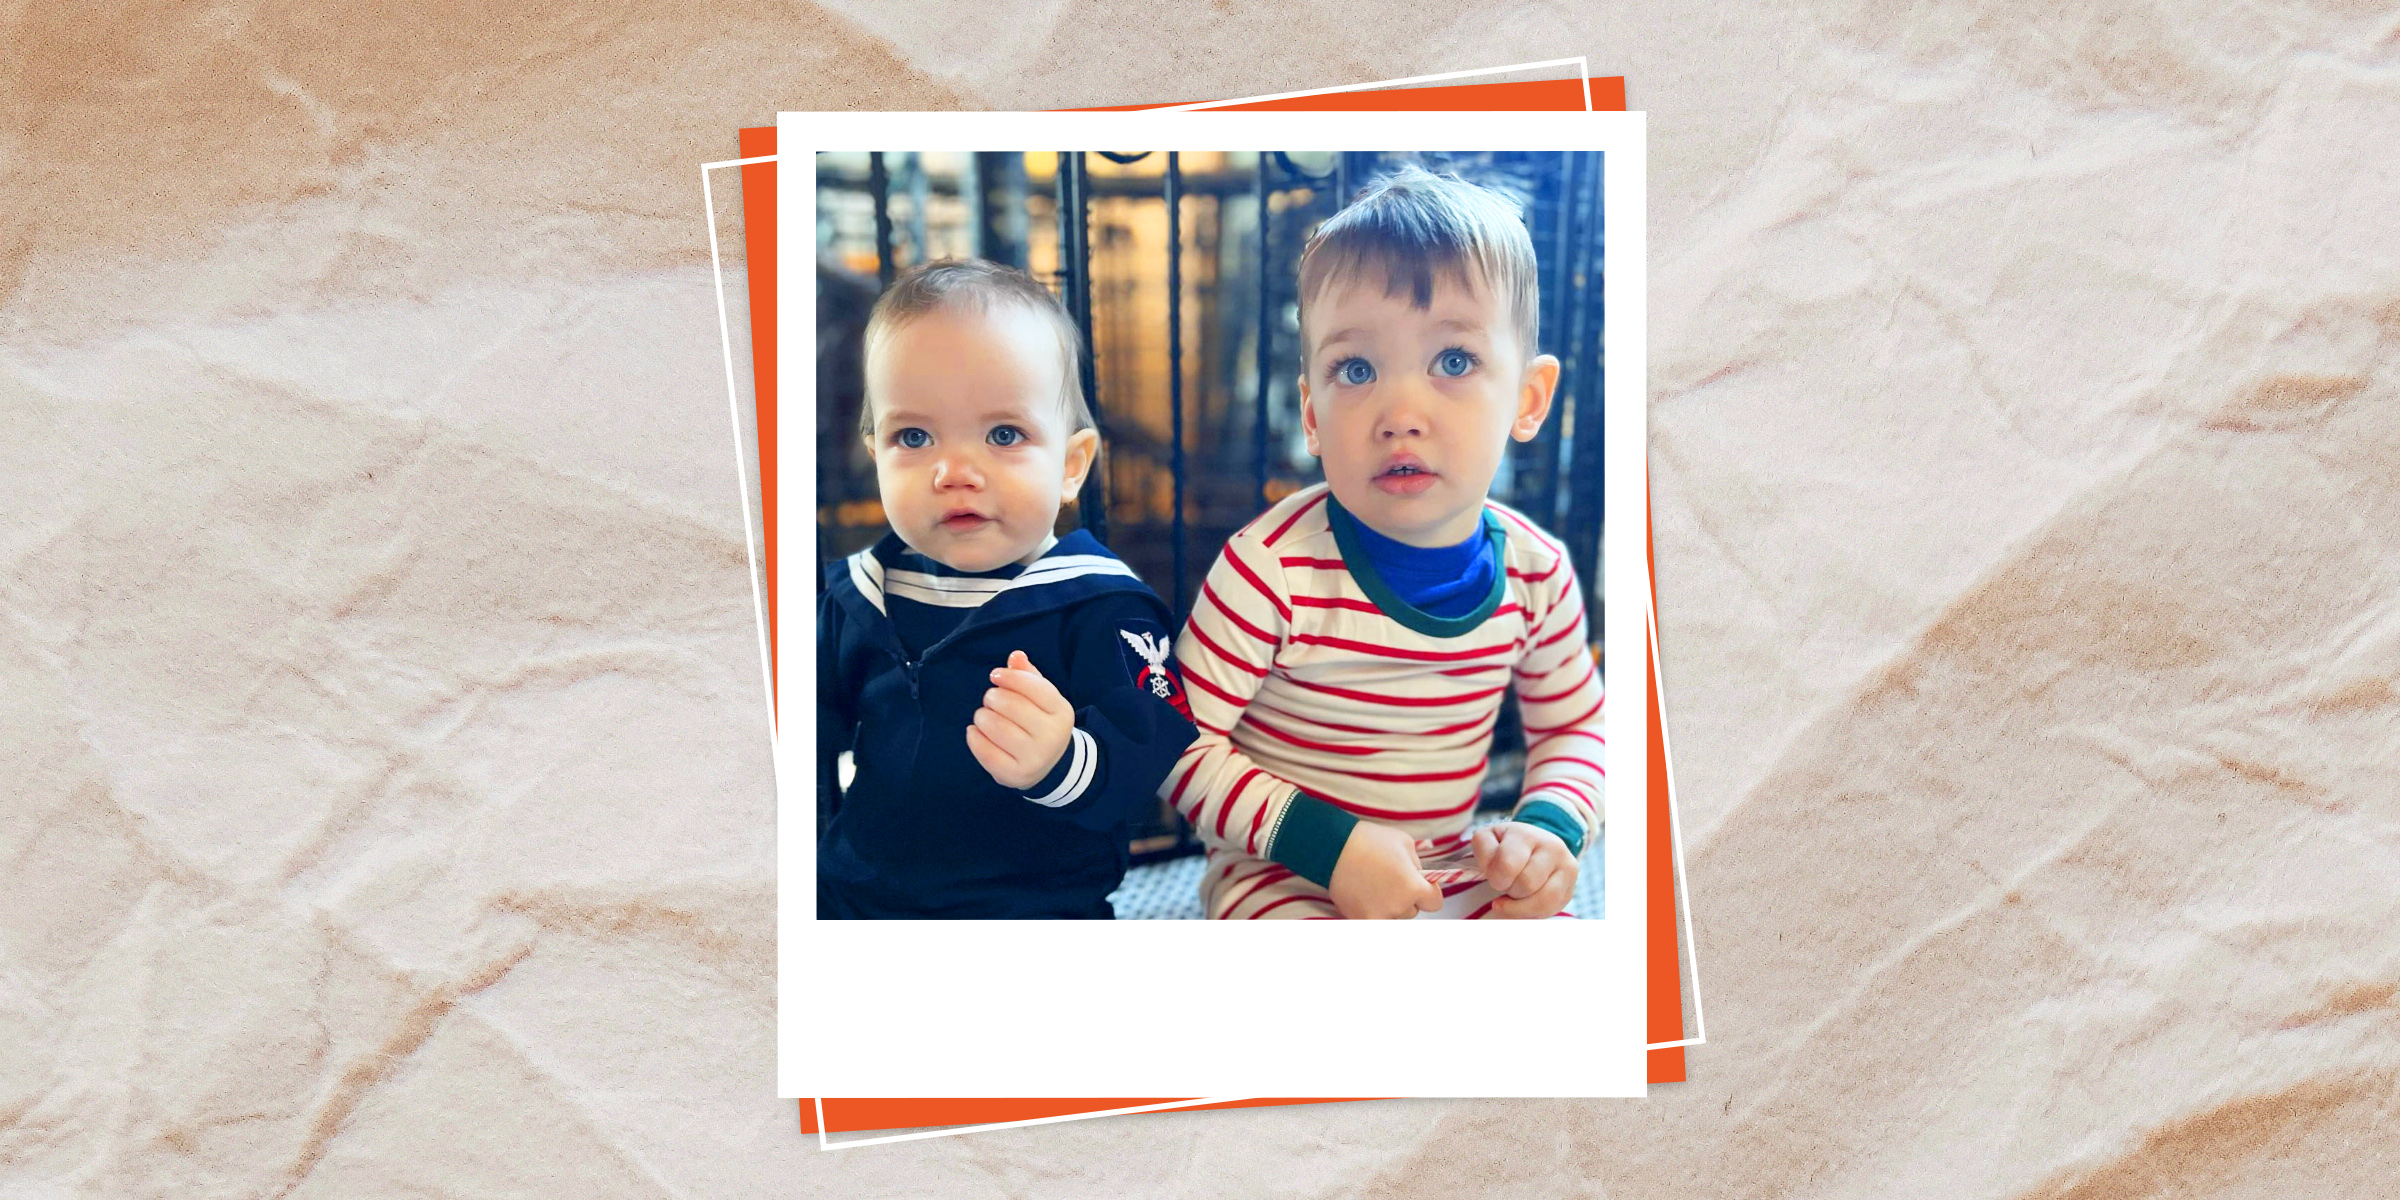 Los hijos de Anderson Cooper, Wyatt y Sebastian | Fuente: Instagram.om/andersoncooper